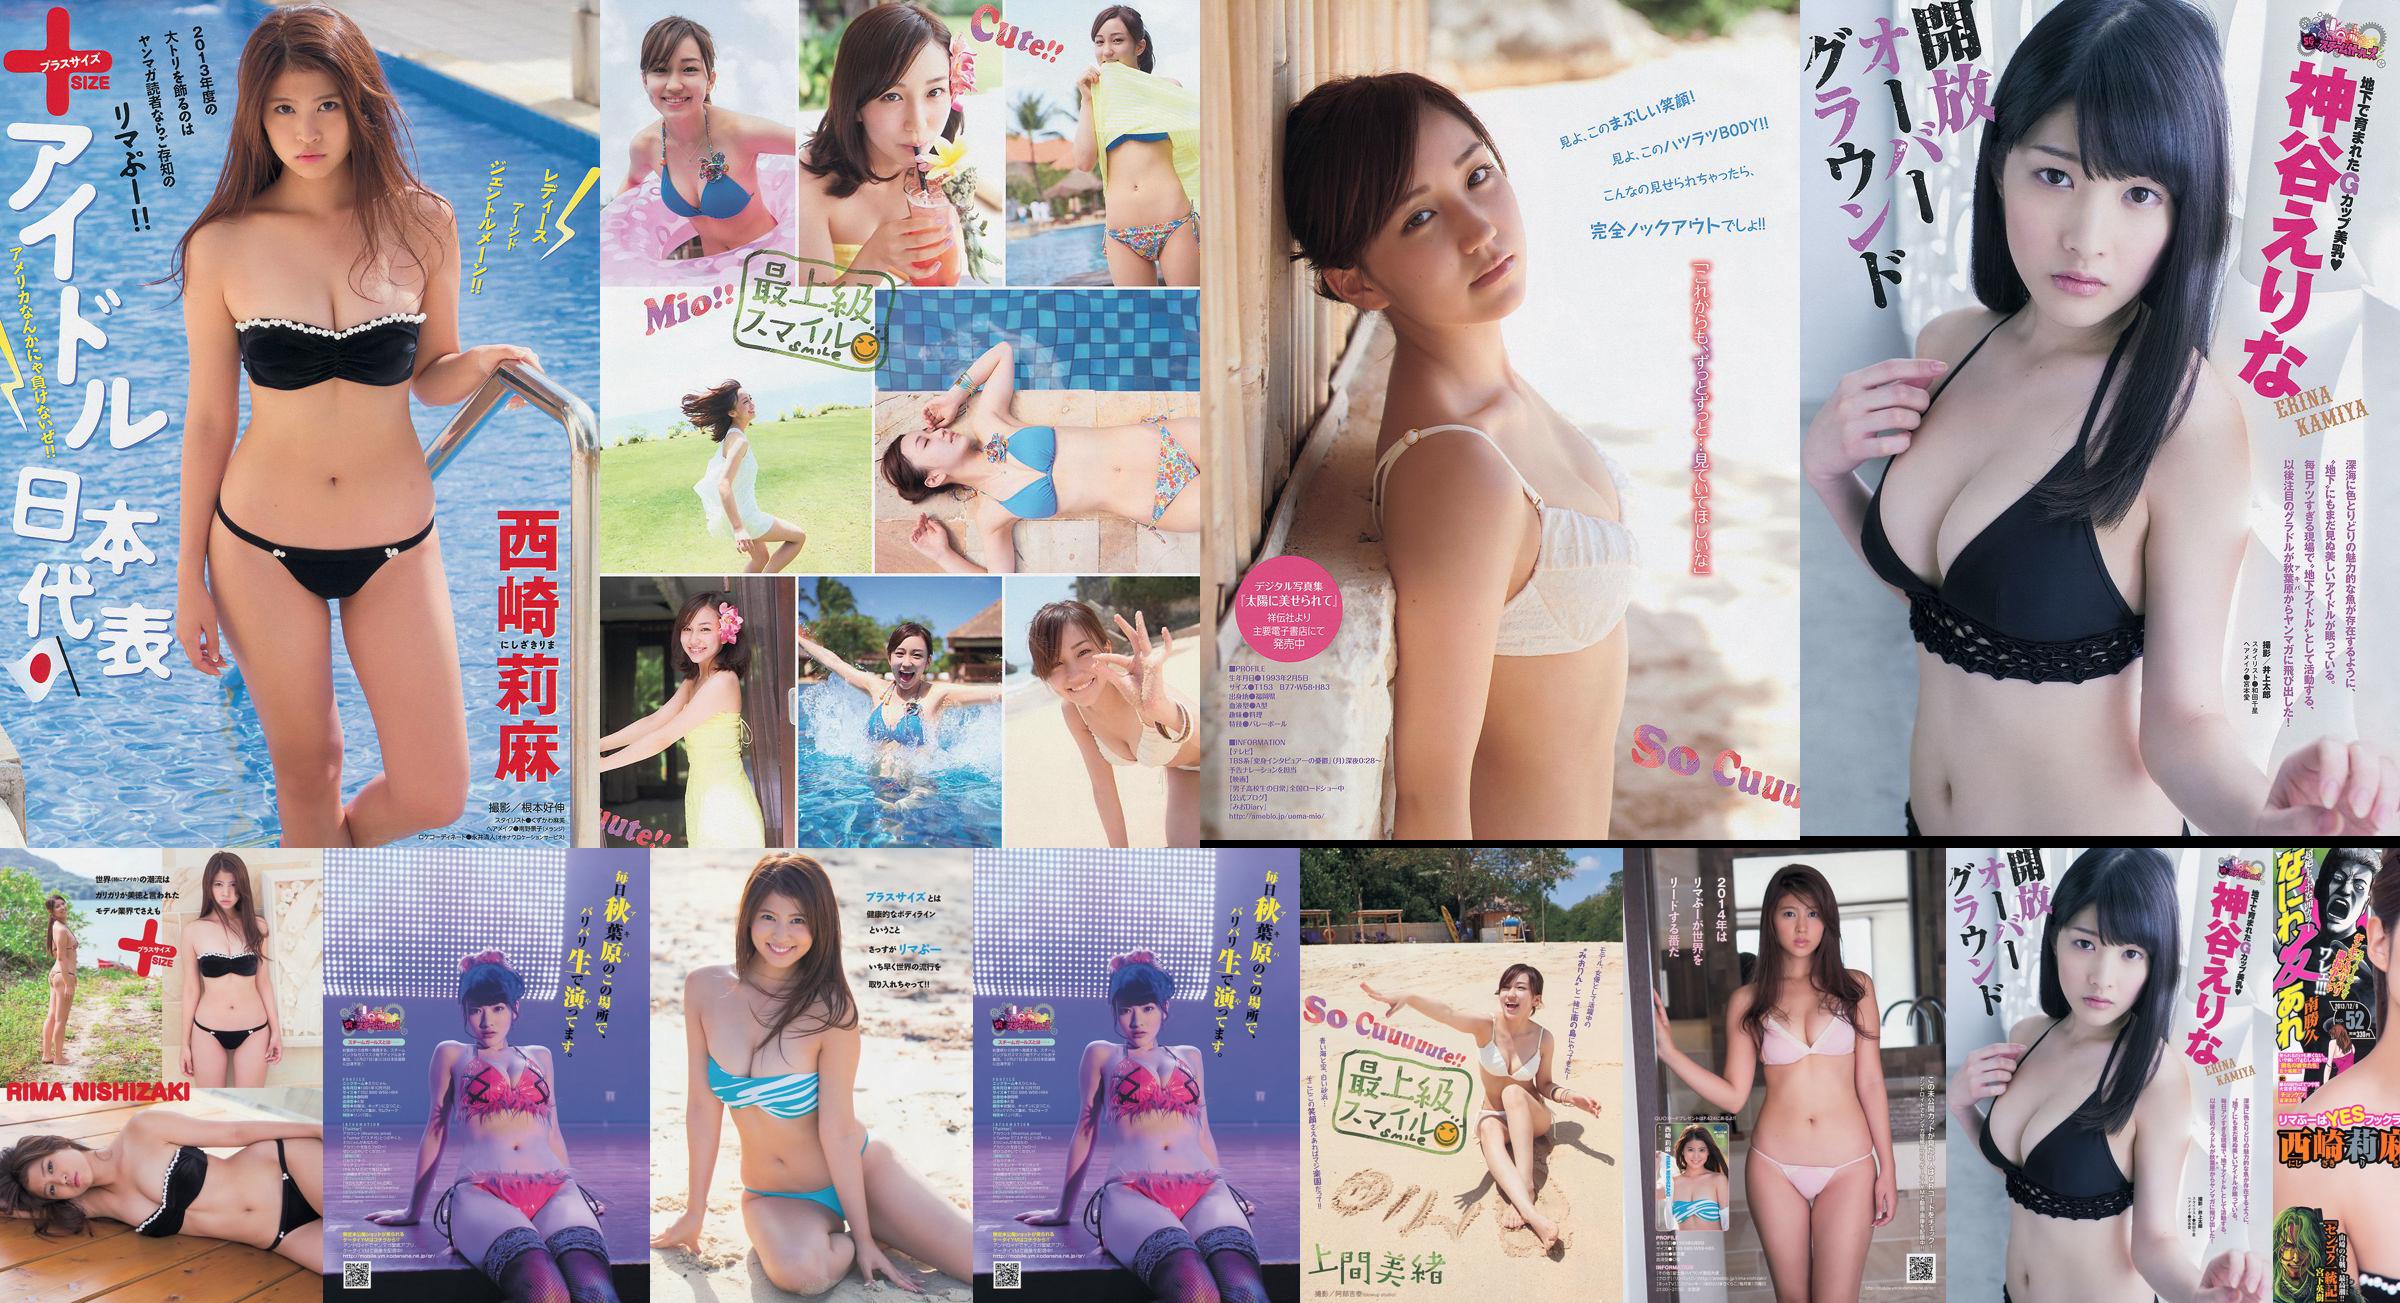 [Tạp chí trẻ] Rima Nishizaki Mio Uema Erina Kamiya 2013 Ảnh số 52 Moshi No.31c475 Trang 3